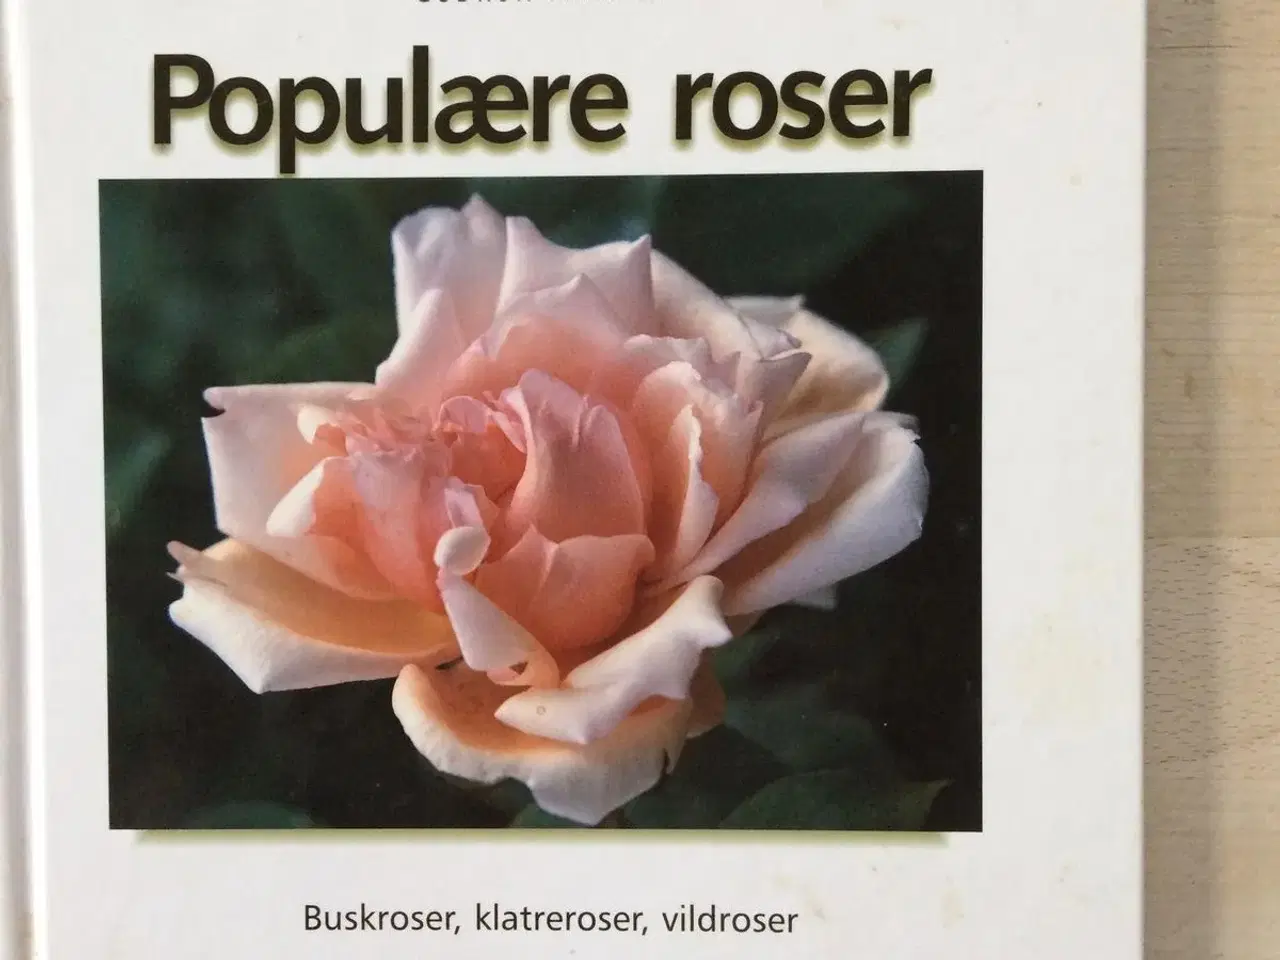 Billede 1 - Populære roser, Gudrun Manell